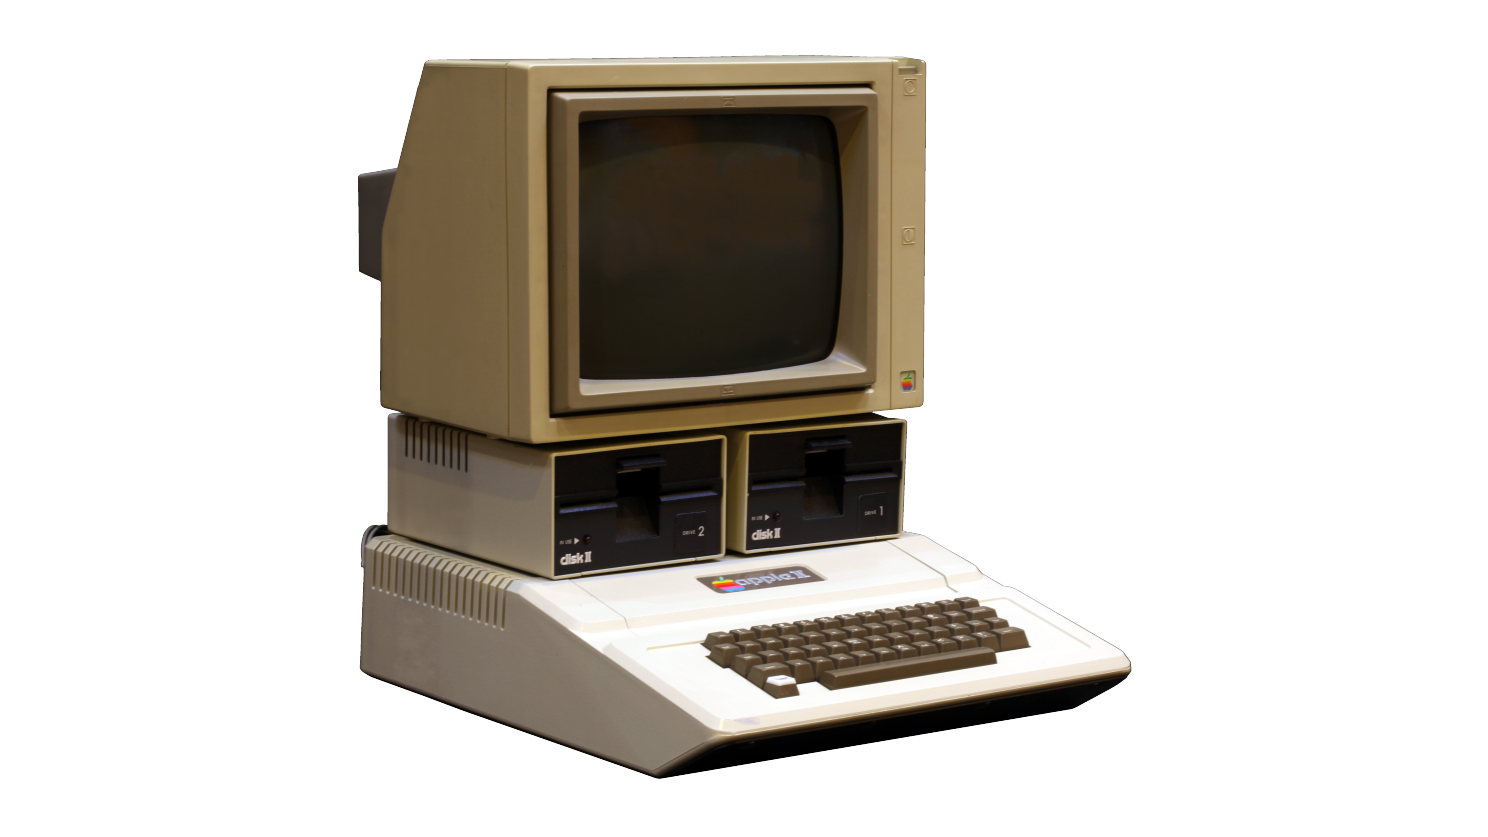 Год выпуска персонального компьютера. Эппл 2. Четвертое поколение ЭВМ IBM PC. Четвертое поколение ЭВМ Apple 1. Эппл 2 компьютер.